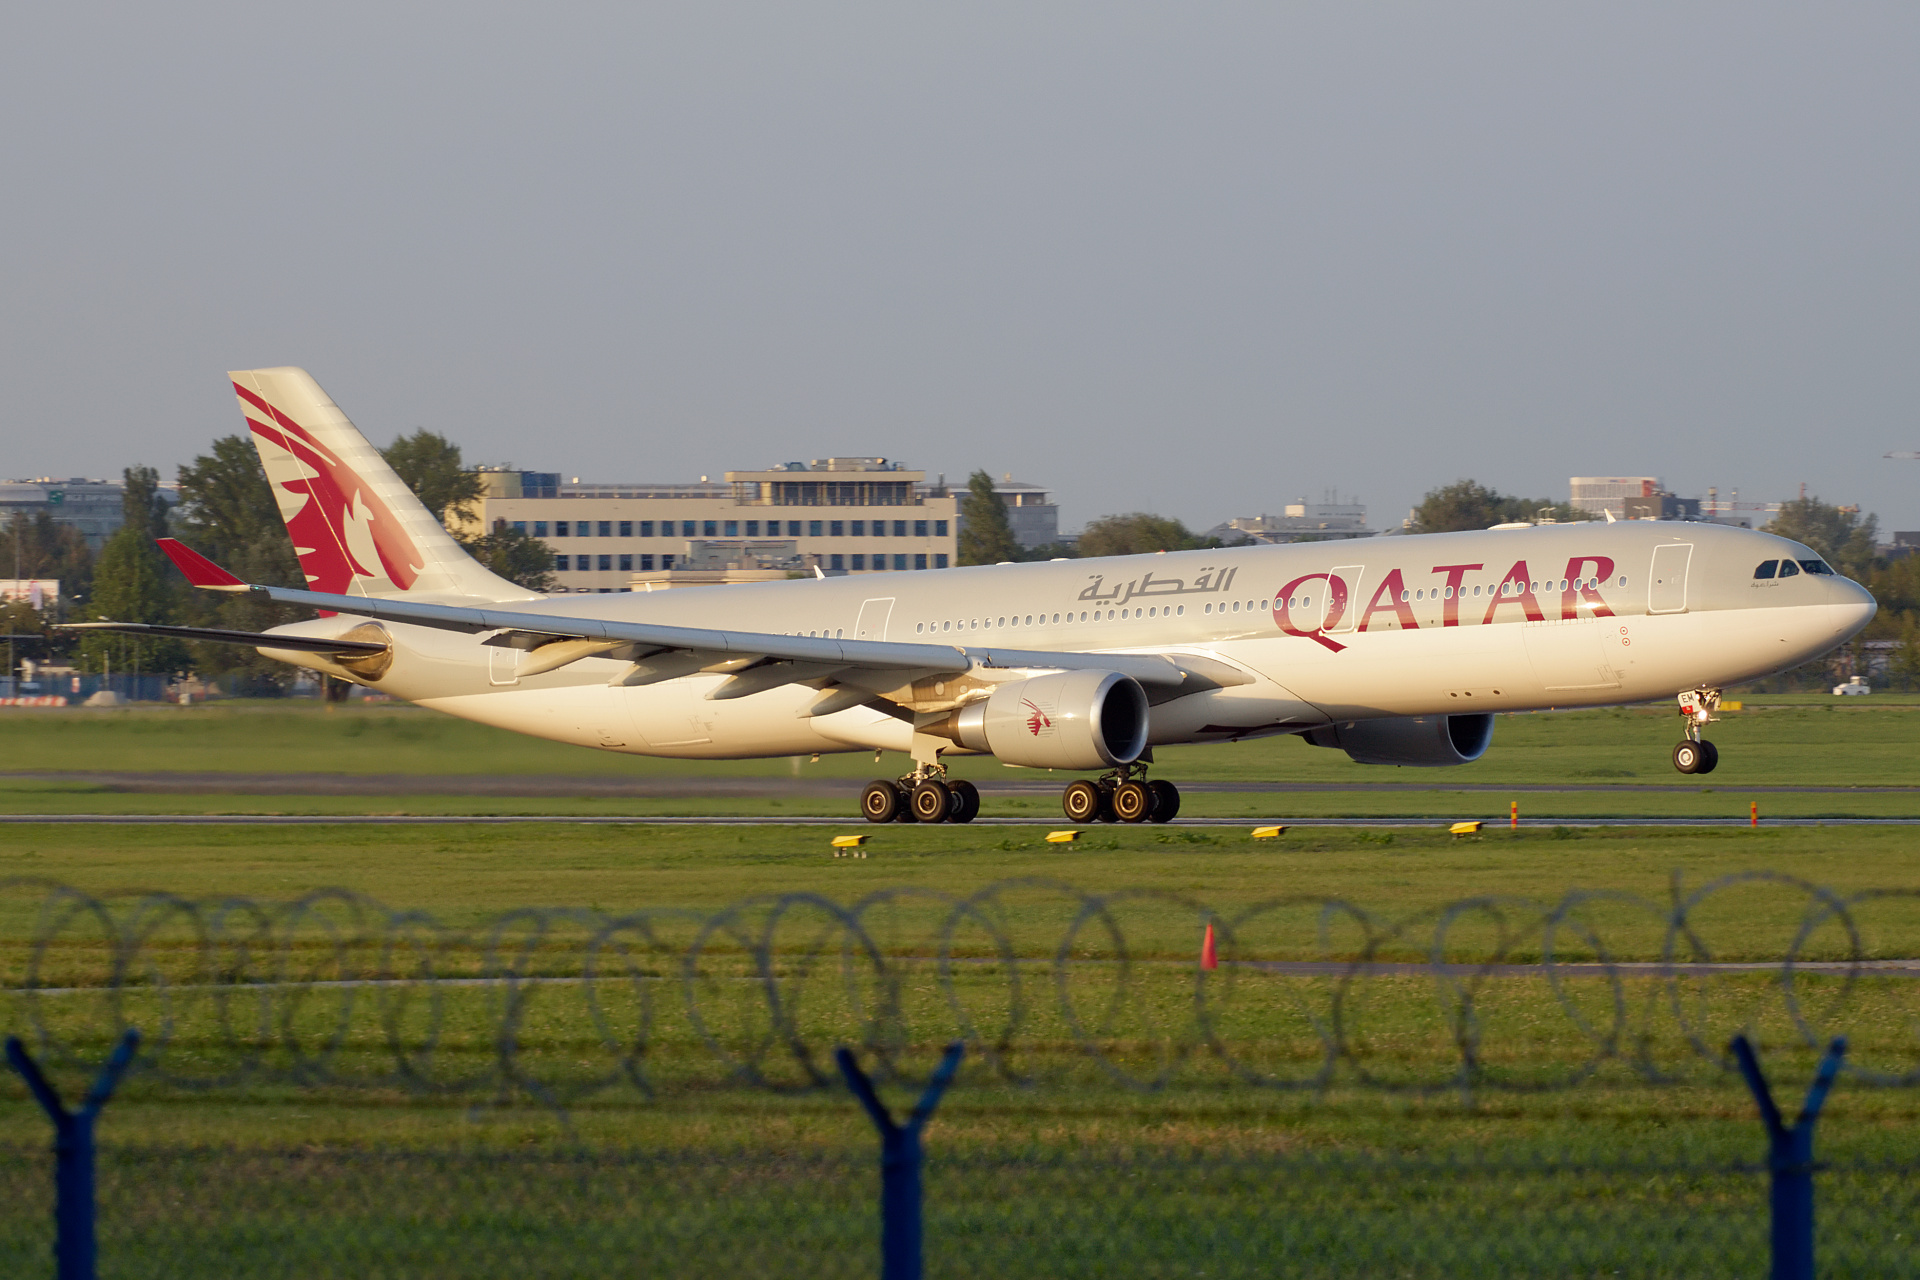 A7-AEM (Aircraft » EPWA Spotting » Airbus A330-300 » Qatar Airways)